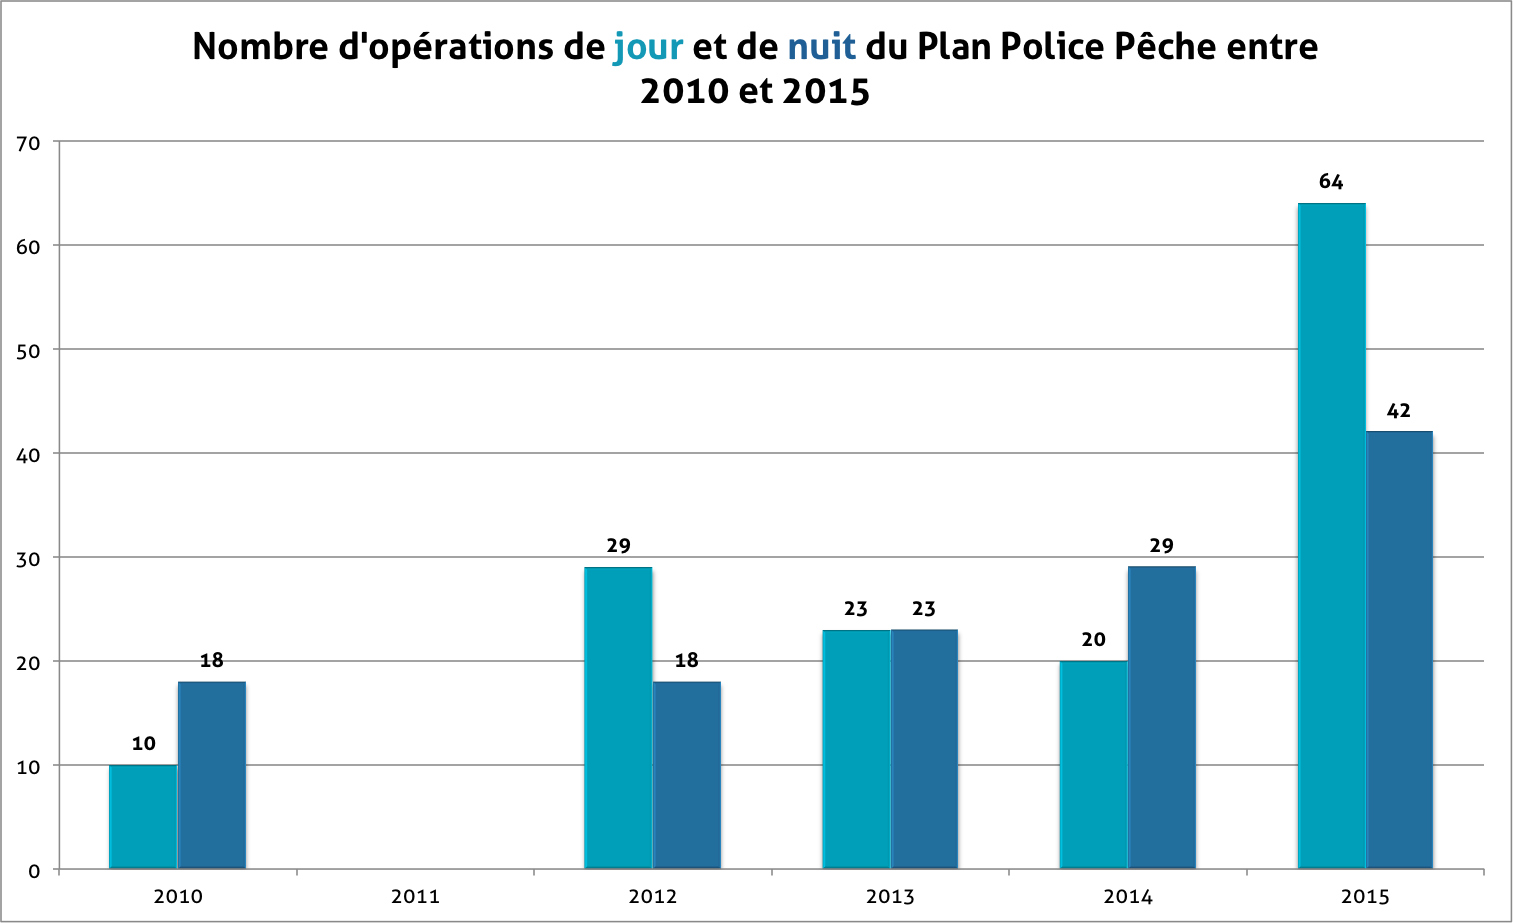 Graphique du nombre d'opérations menées de 2010 à 2015 dans le cadre du plan police pêche